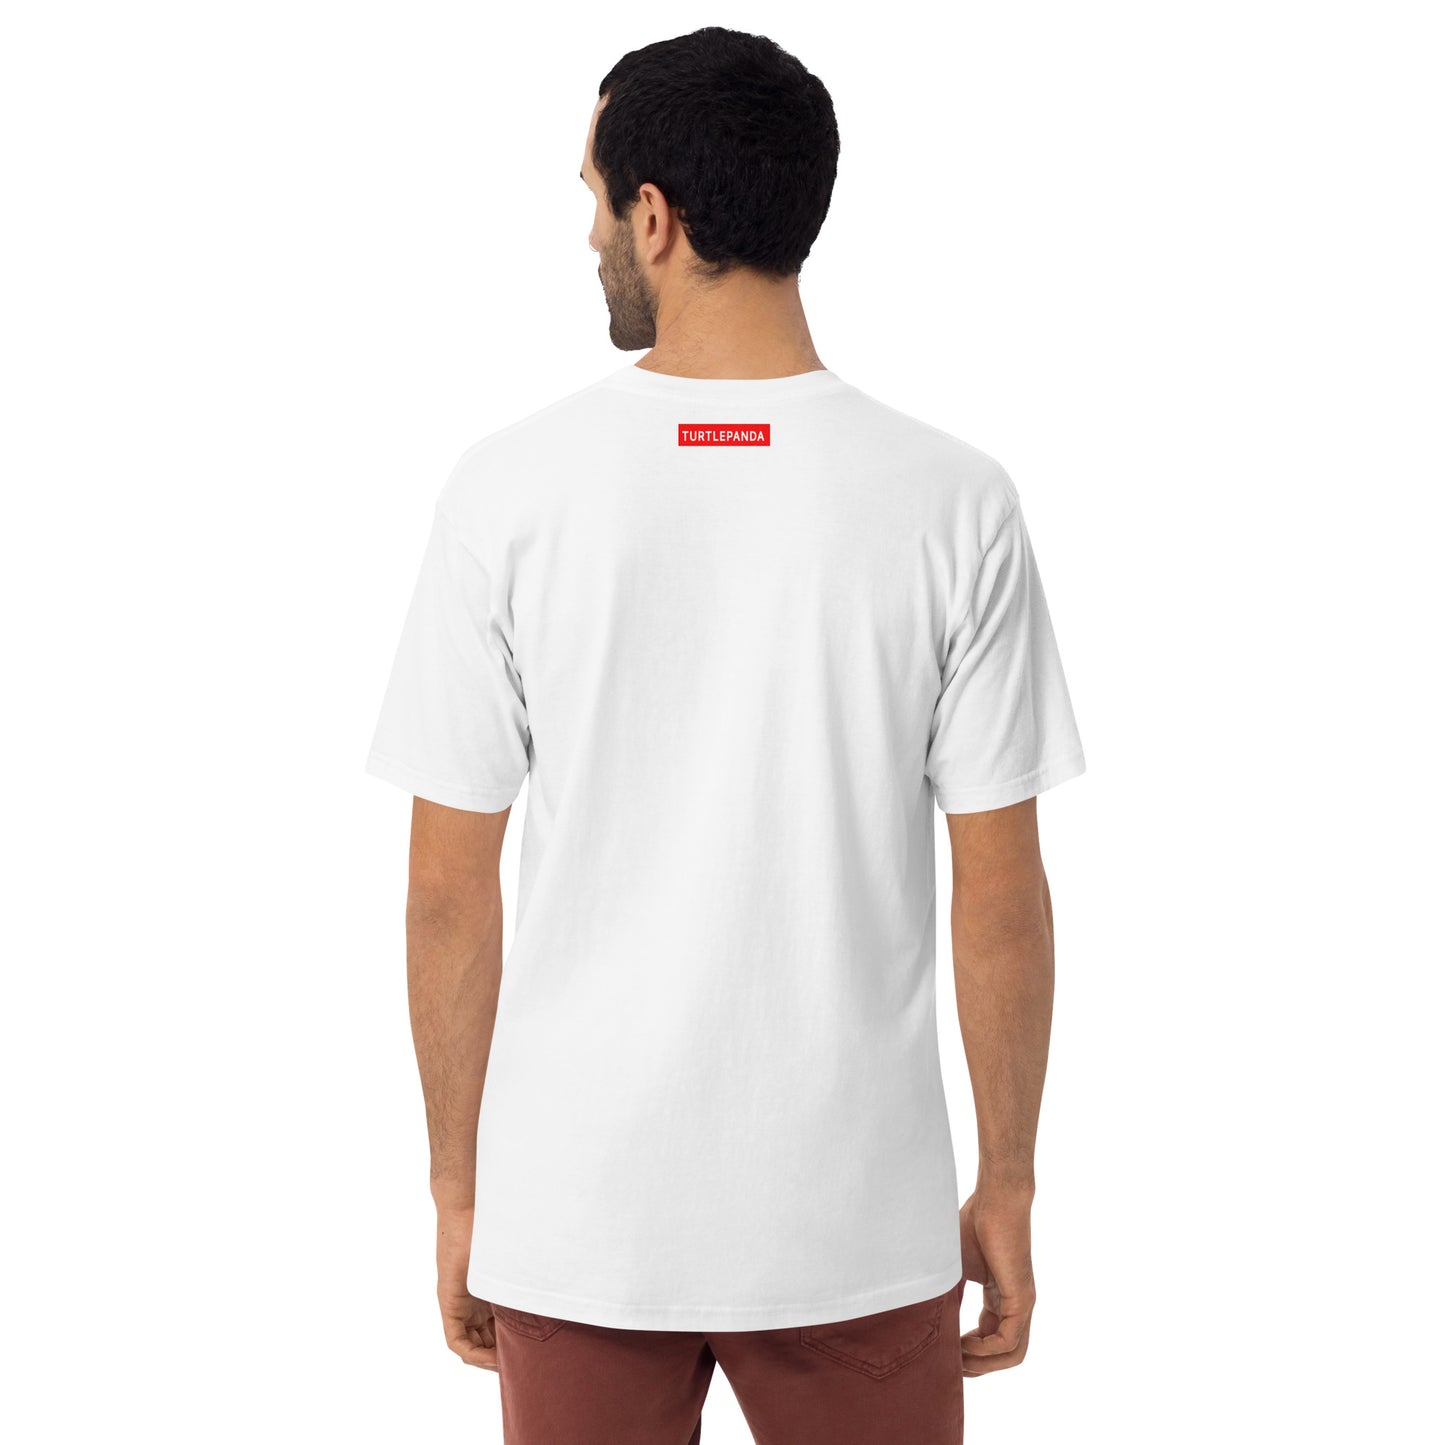 newyork - men tshirts - shirts - tshirts - graphic tees - turtlepanda